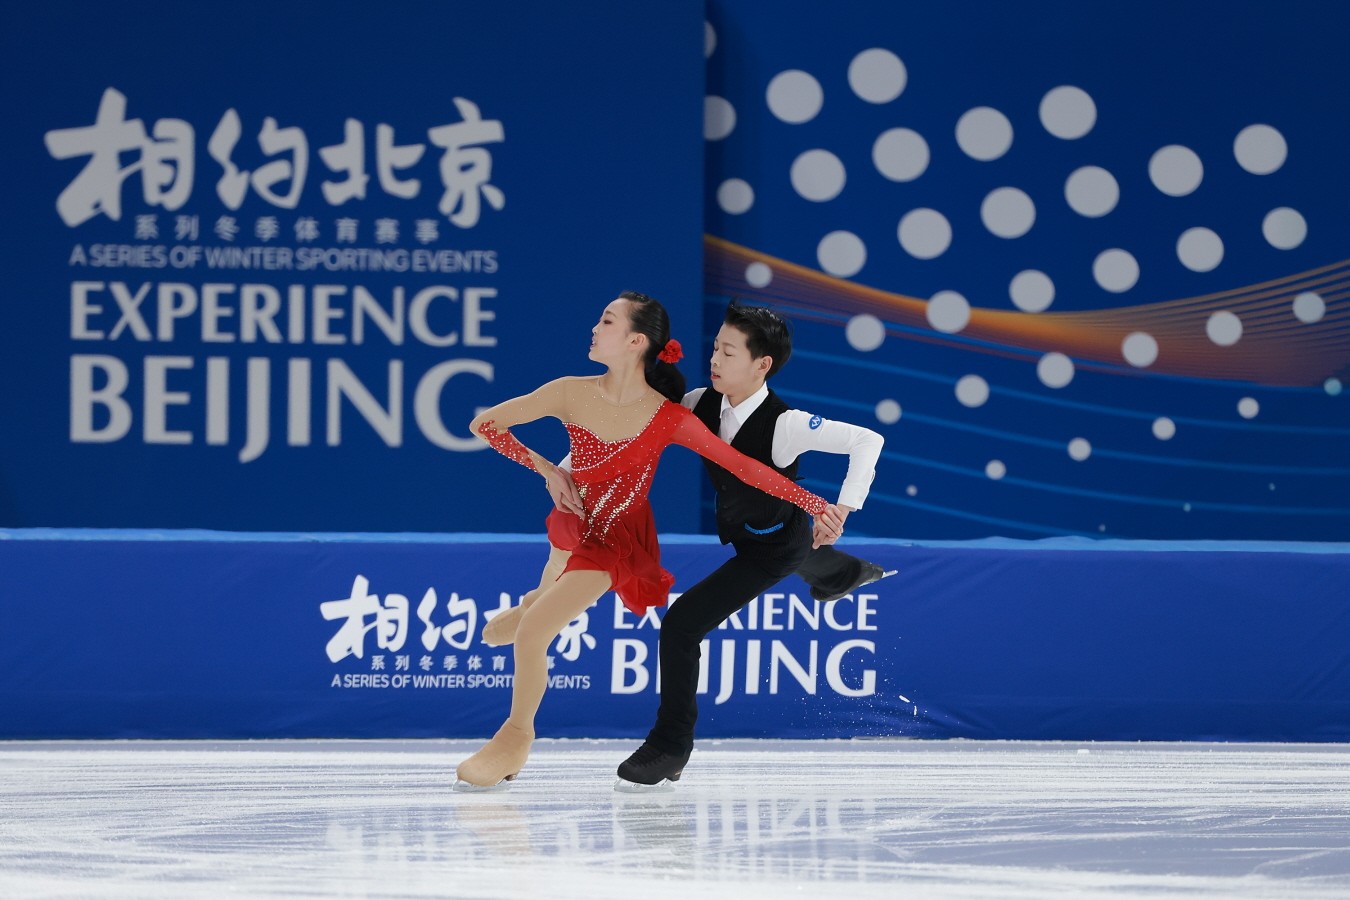 Beijing 2022 Olympics Testing Activities - Day 3